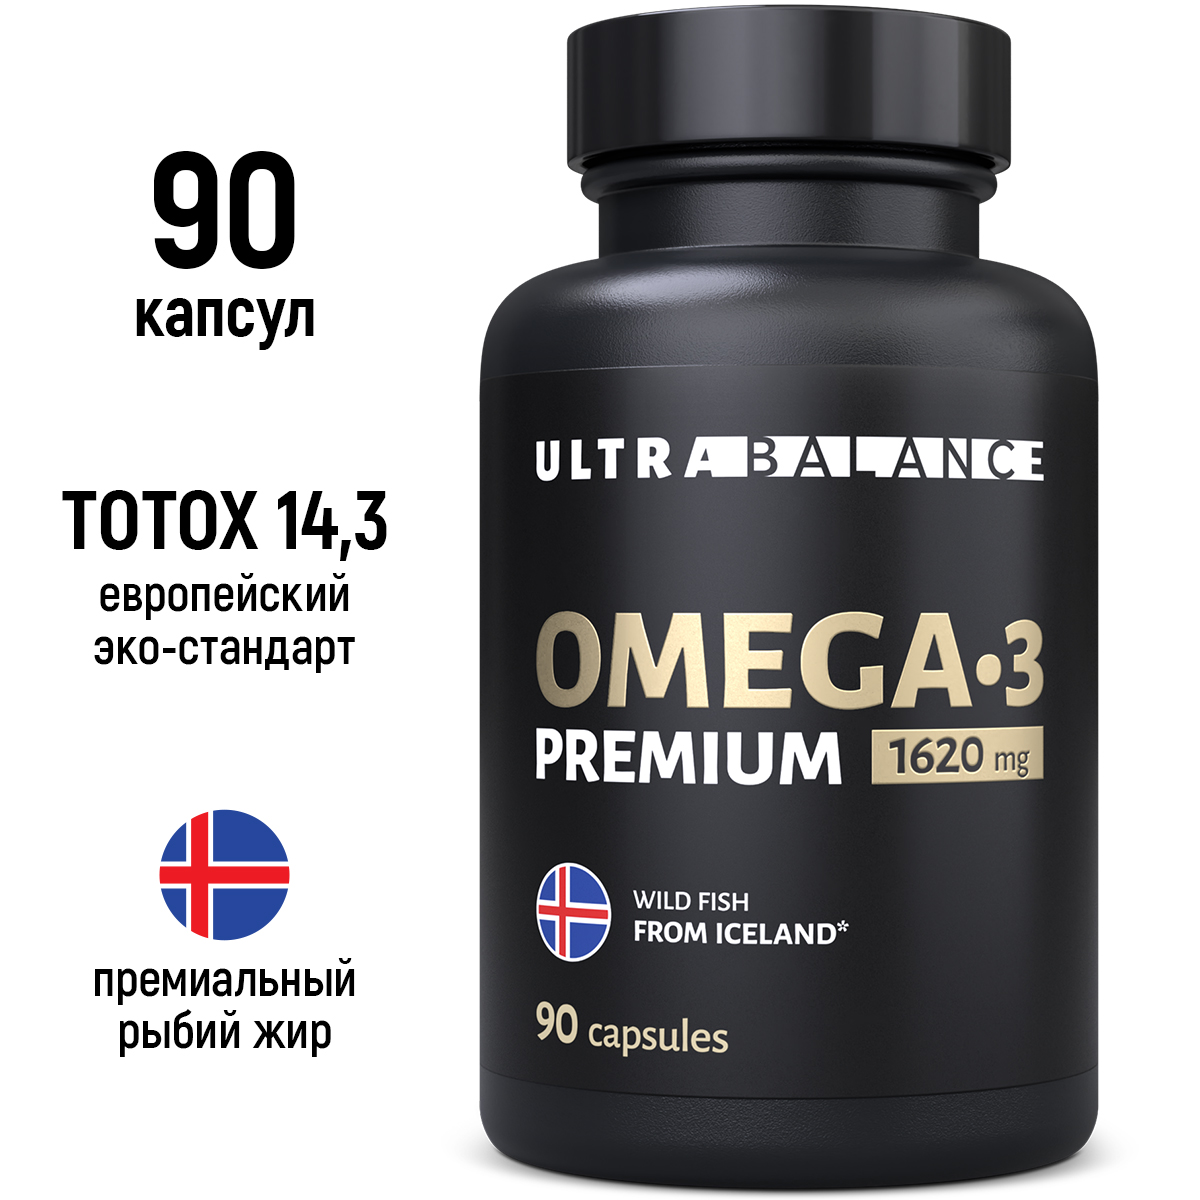 Купить Рыбий жир Омега 3 Premium, Омега 3 рыбий жир UltraBalance Omega-3 витамины для женщин и мужчин капсулы 1620 мг 90 шт